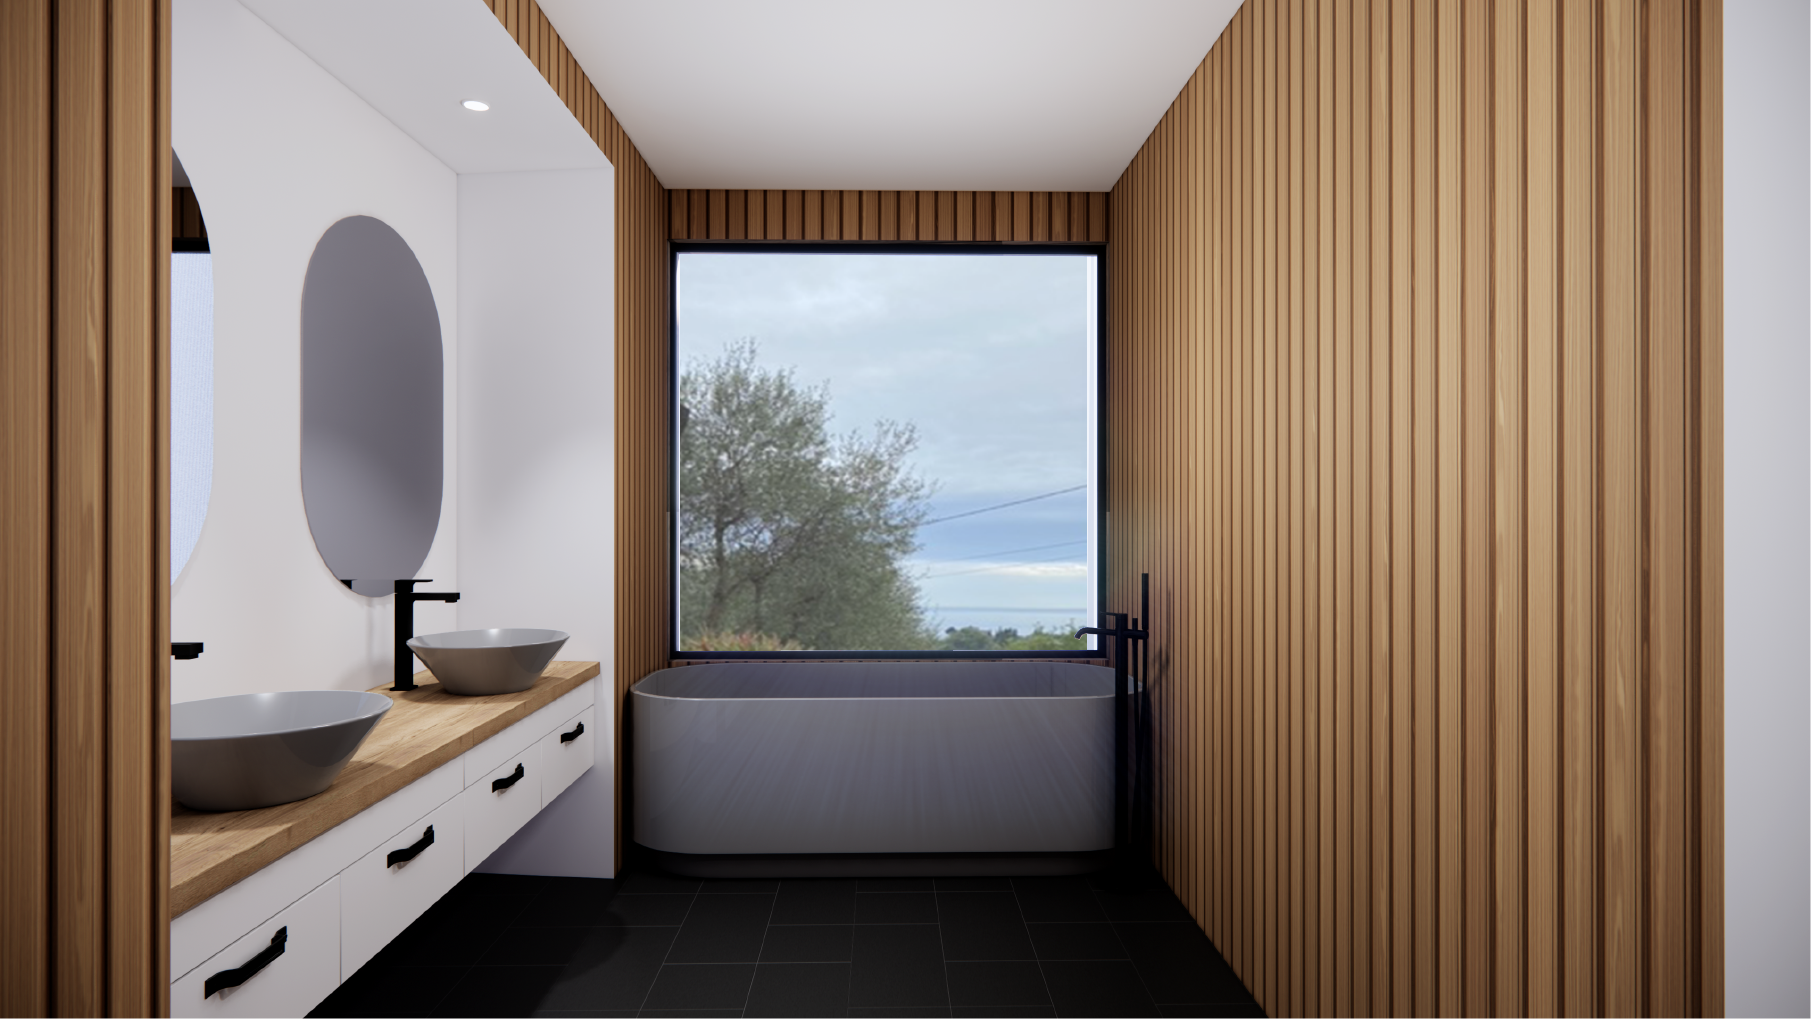 Salle de bain moderne de l'extension d'une villa. Double vasque avec miroirs, baignoire blanche moderne et fenêtre avec vue sur la nature